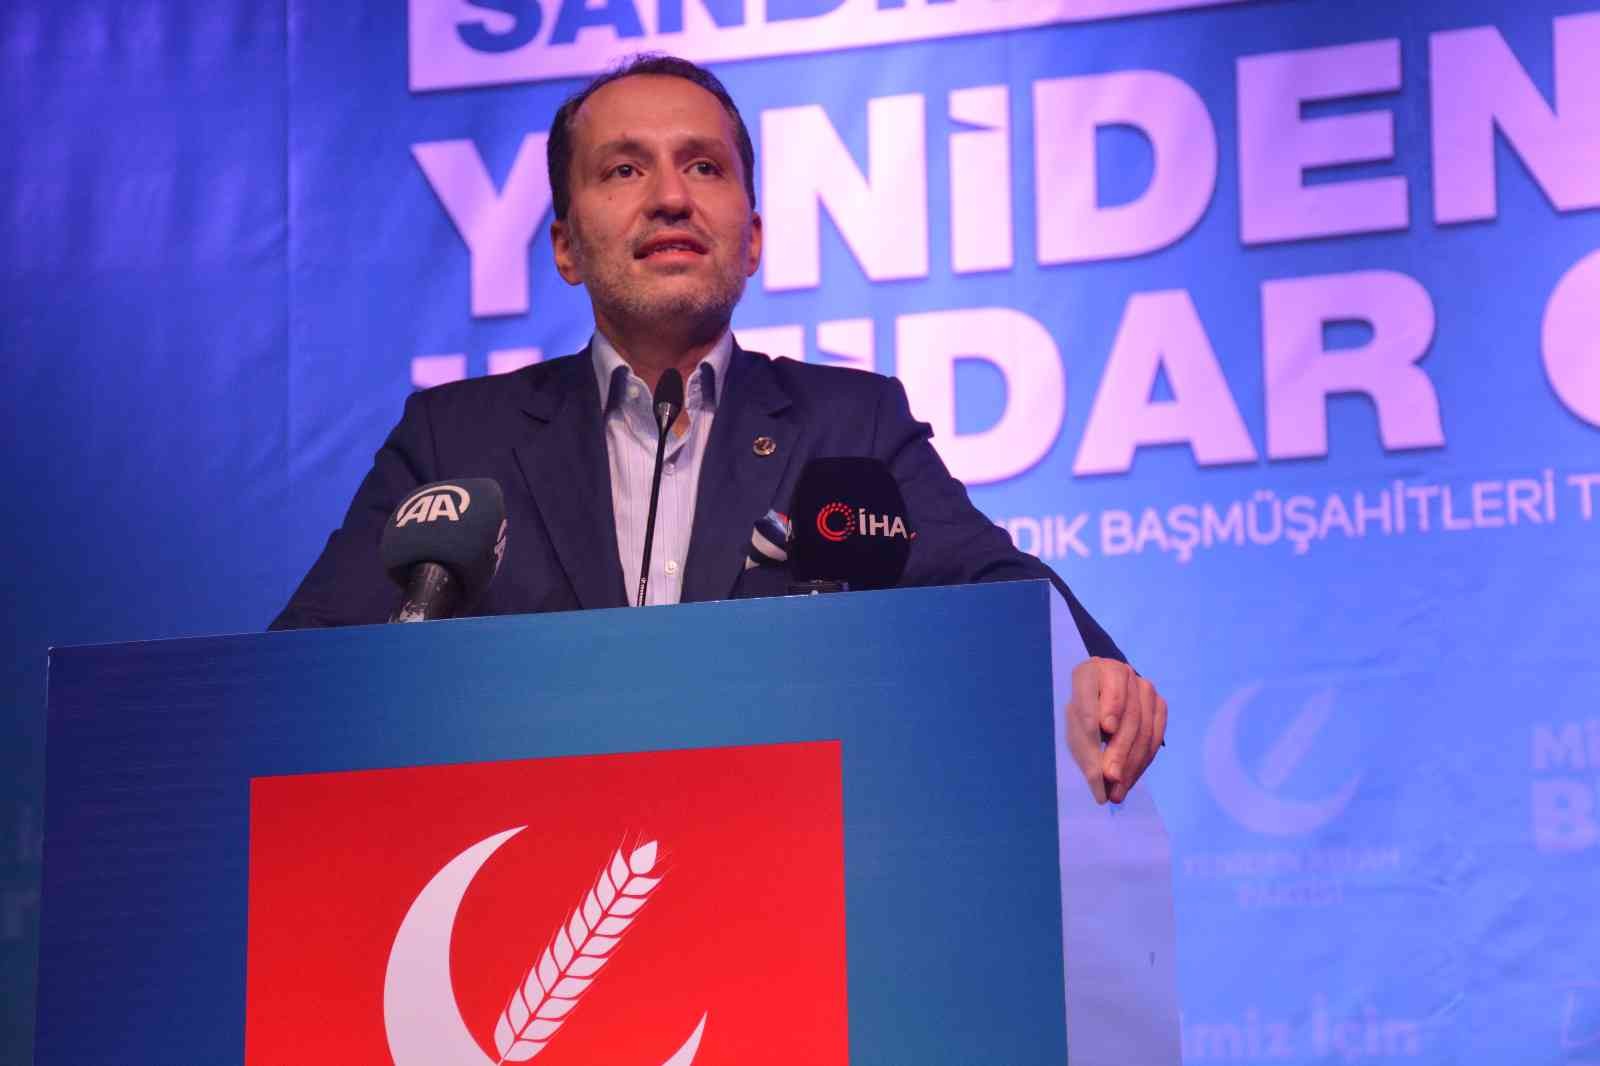 Yeniden Refah Partisi Genel Başkanı Erbakan: İktidar olmayı hedefliyoruz #kocaeli